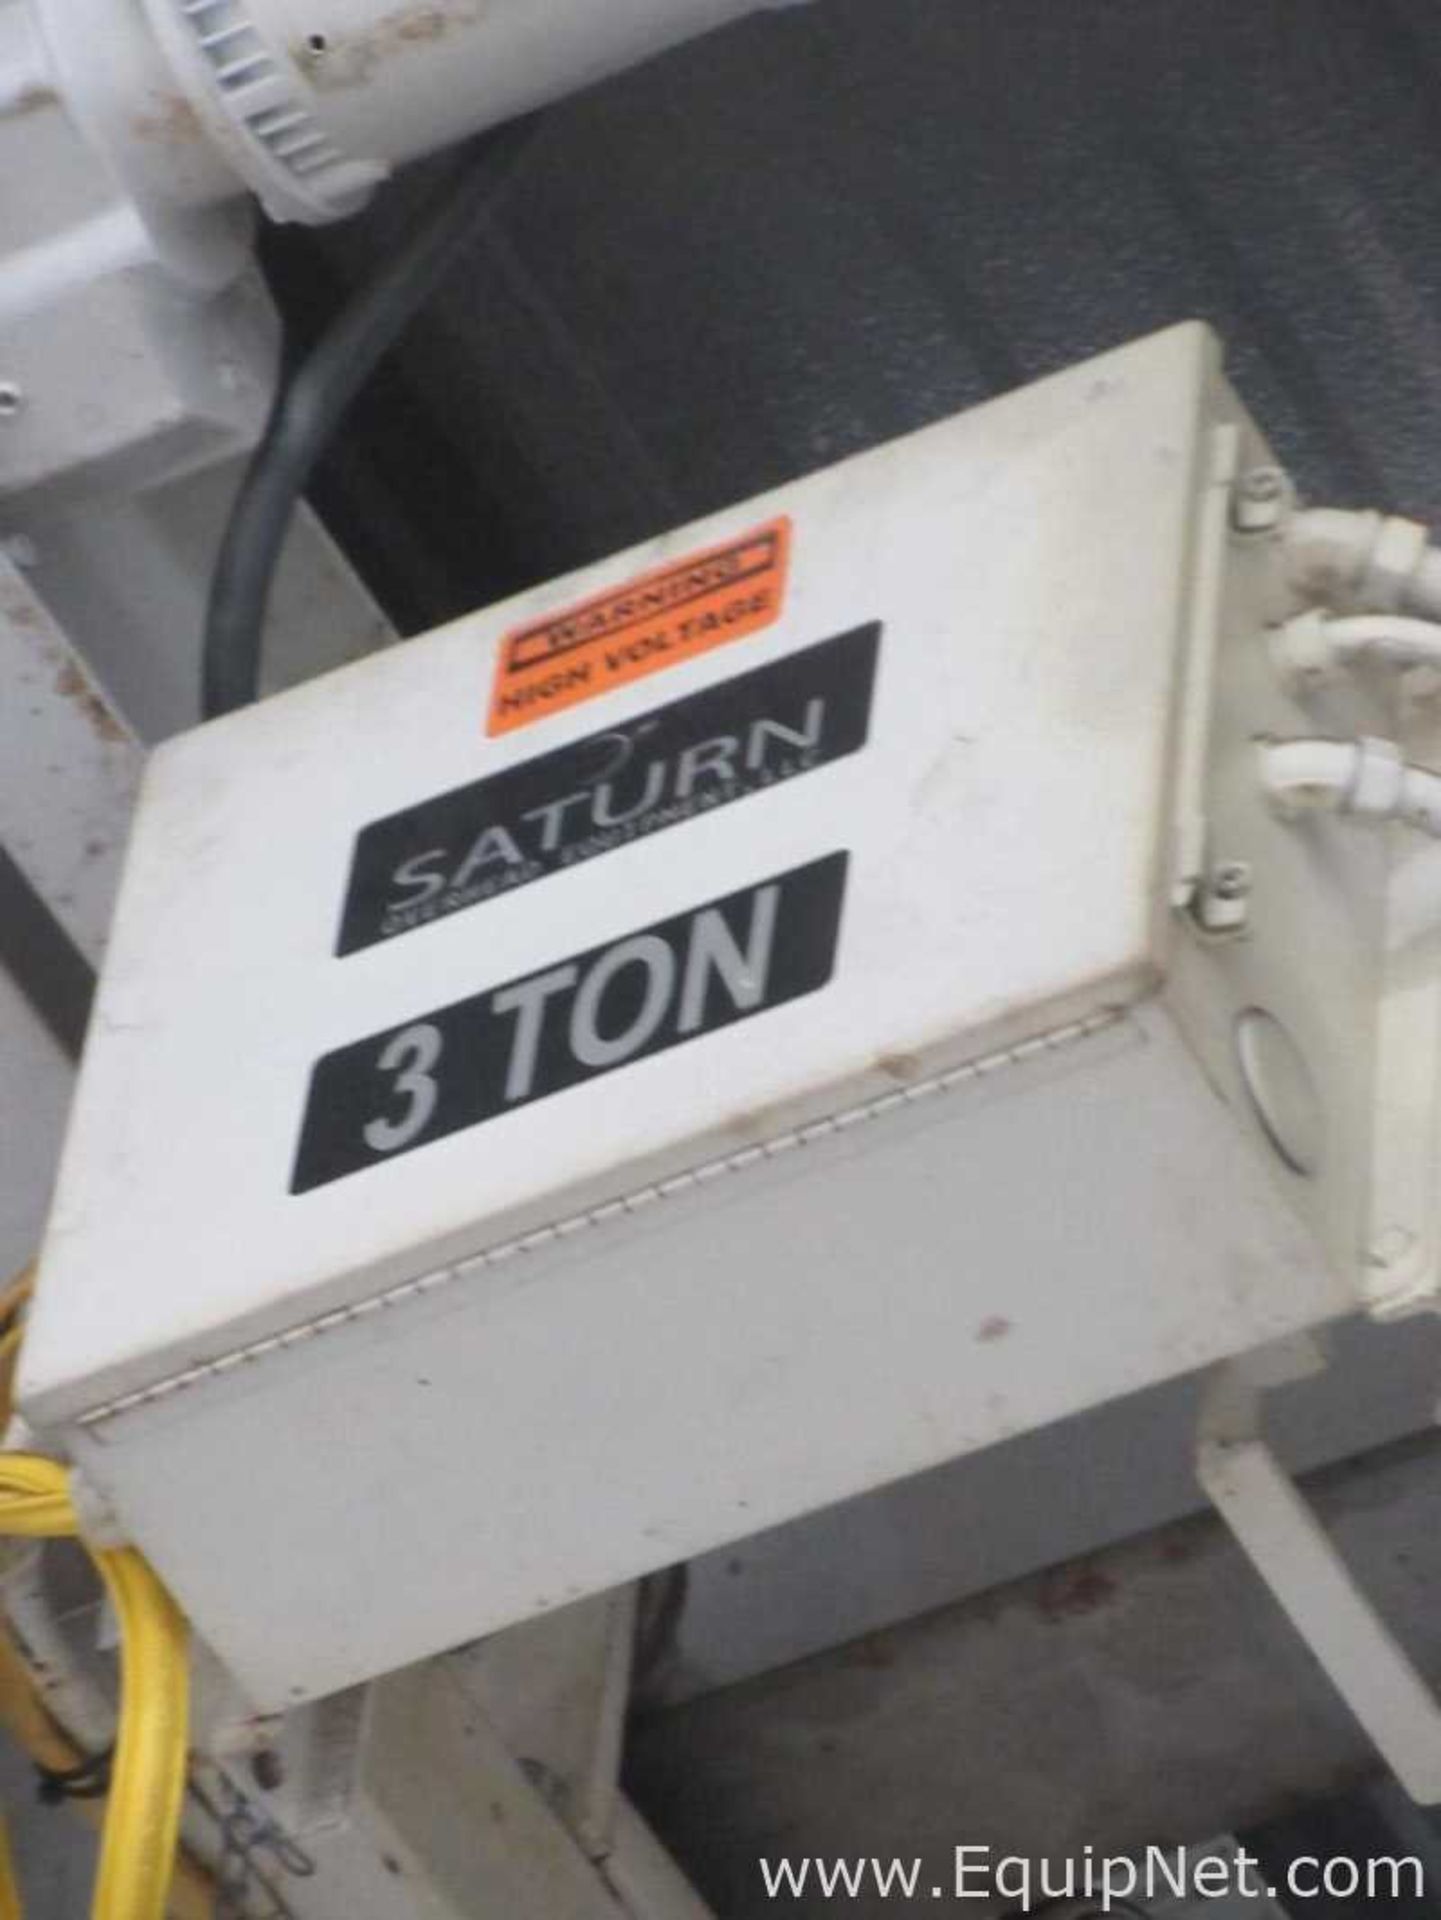 Saturn 3 Ton Hoist - Image 3 of 7